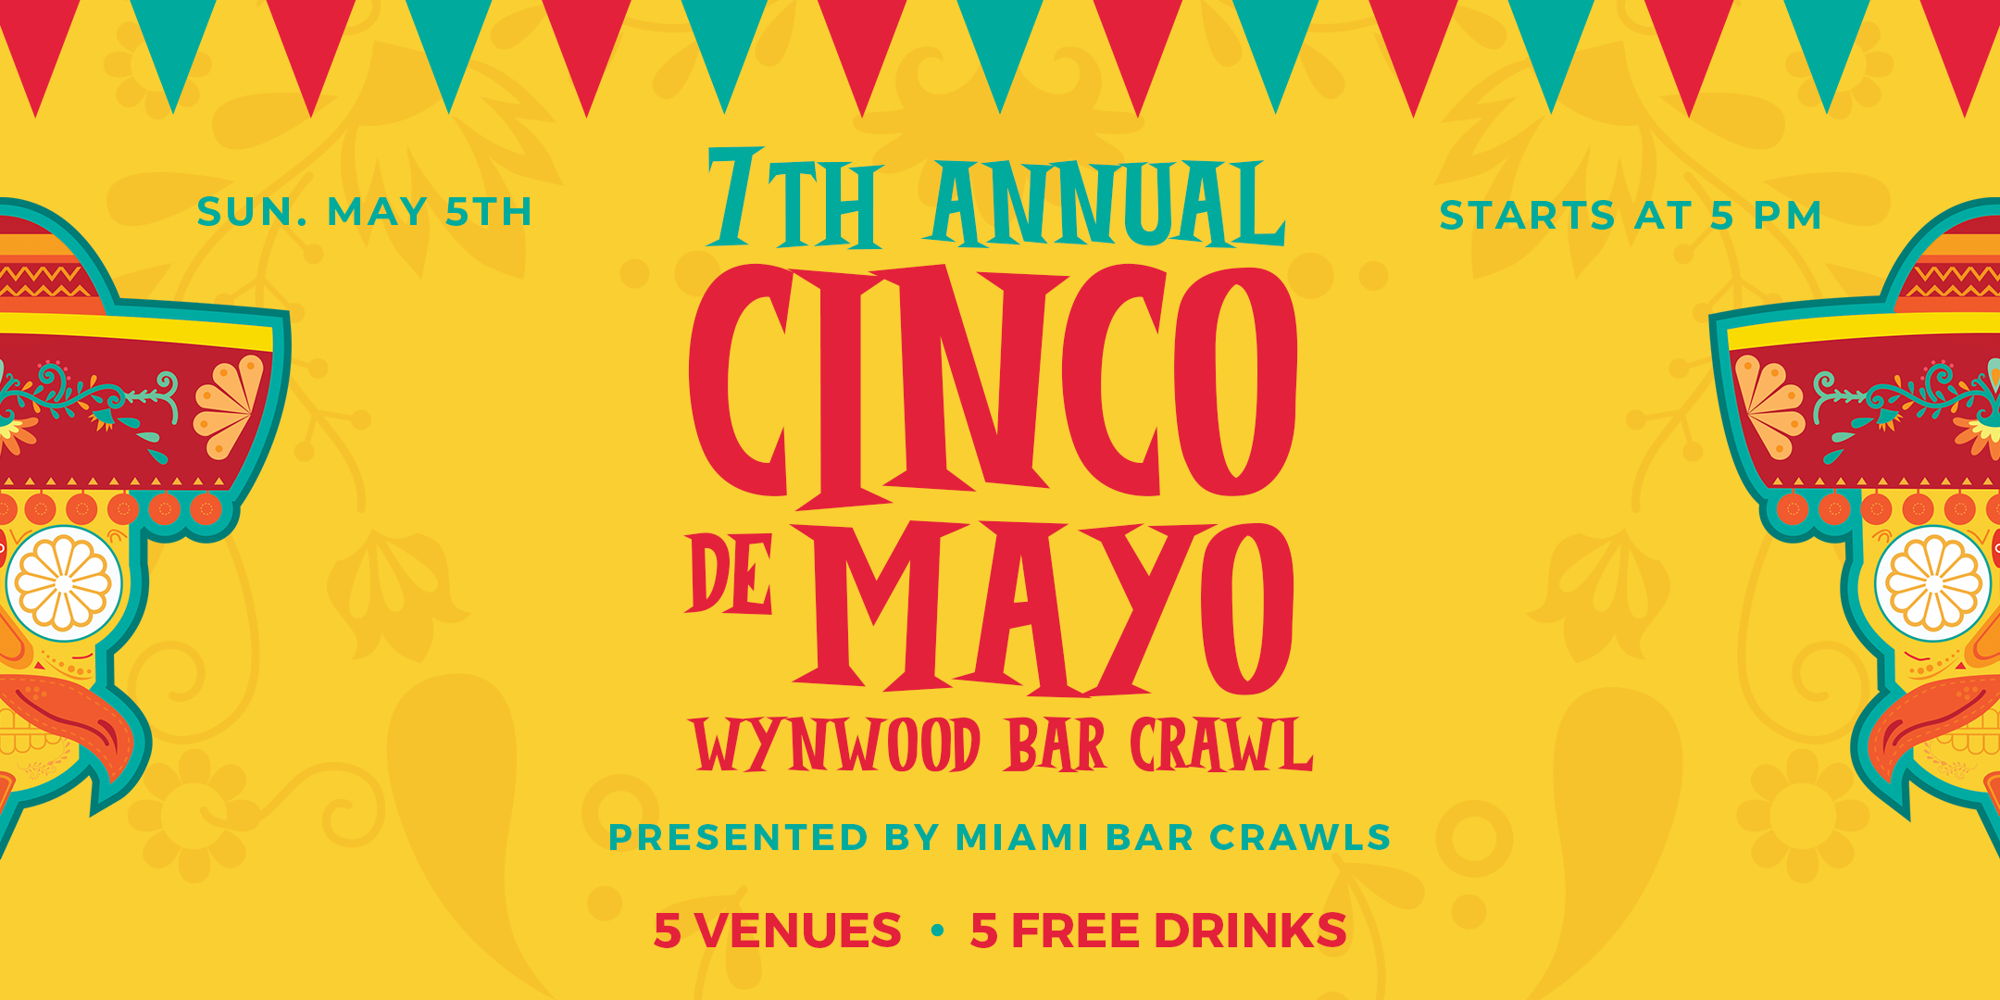 7th Annual Wynwood Cinco de Mayo Bar Crawl - Day 2 promotional image